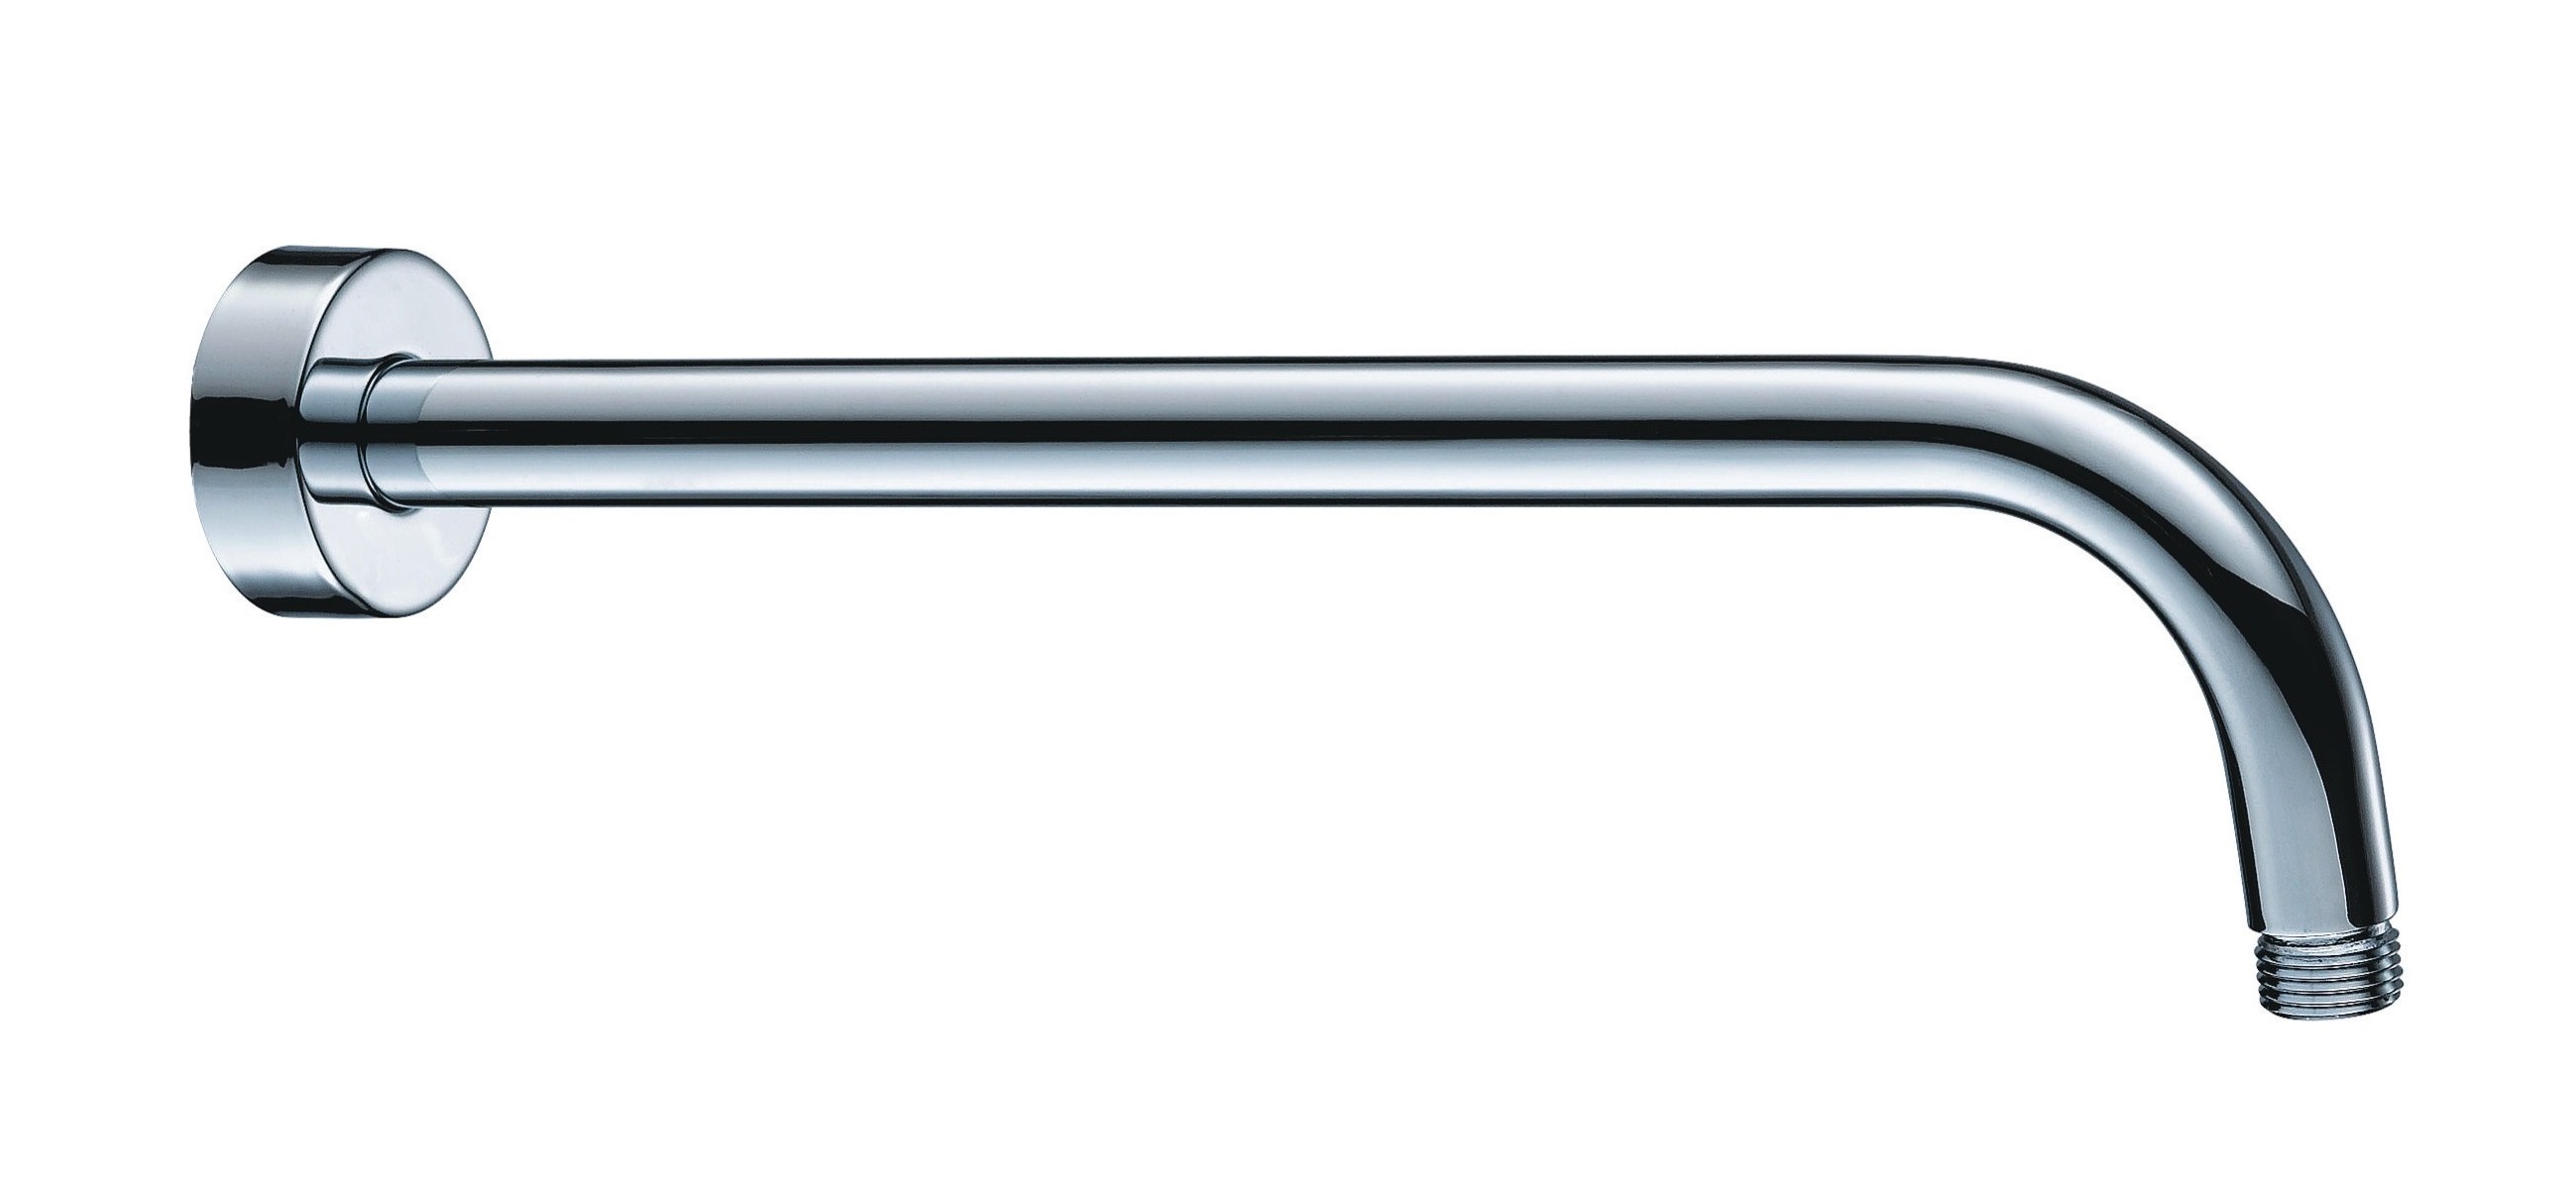 Brausearm AqvaDesign - rund - 1/2″ AG × 1/2″ AG × 350 mm - Rosette - chrom